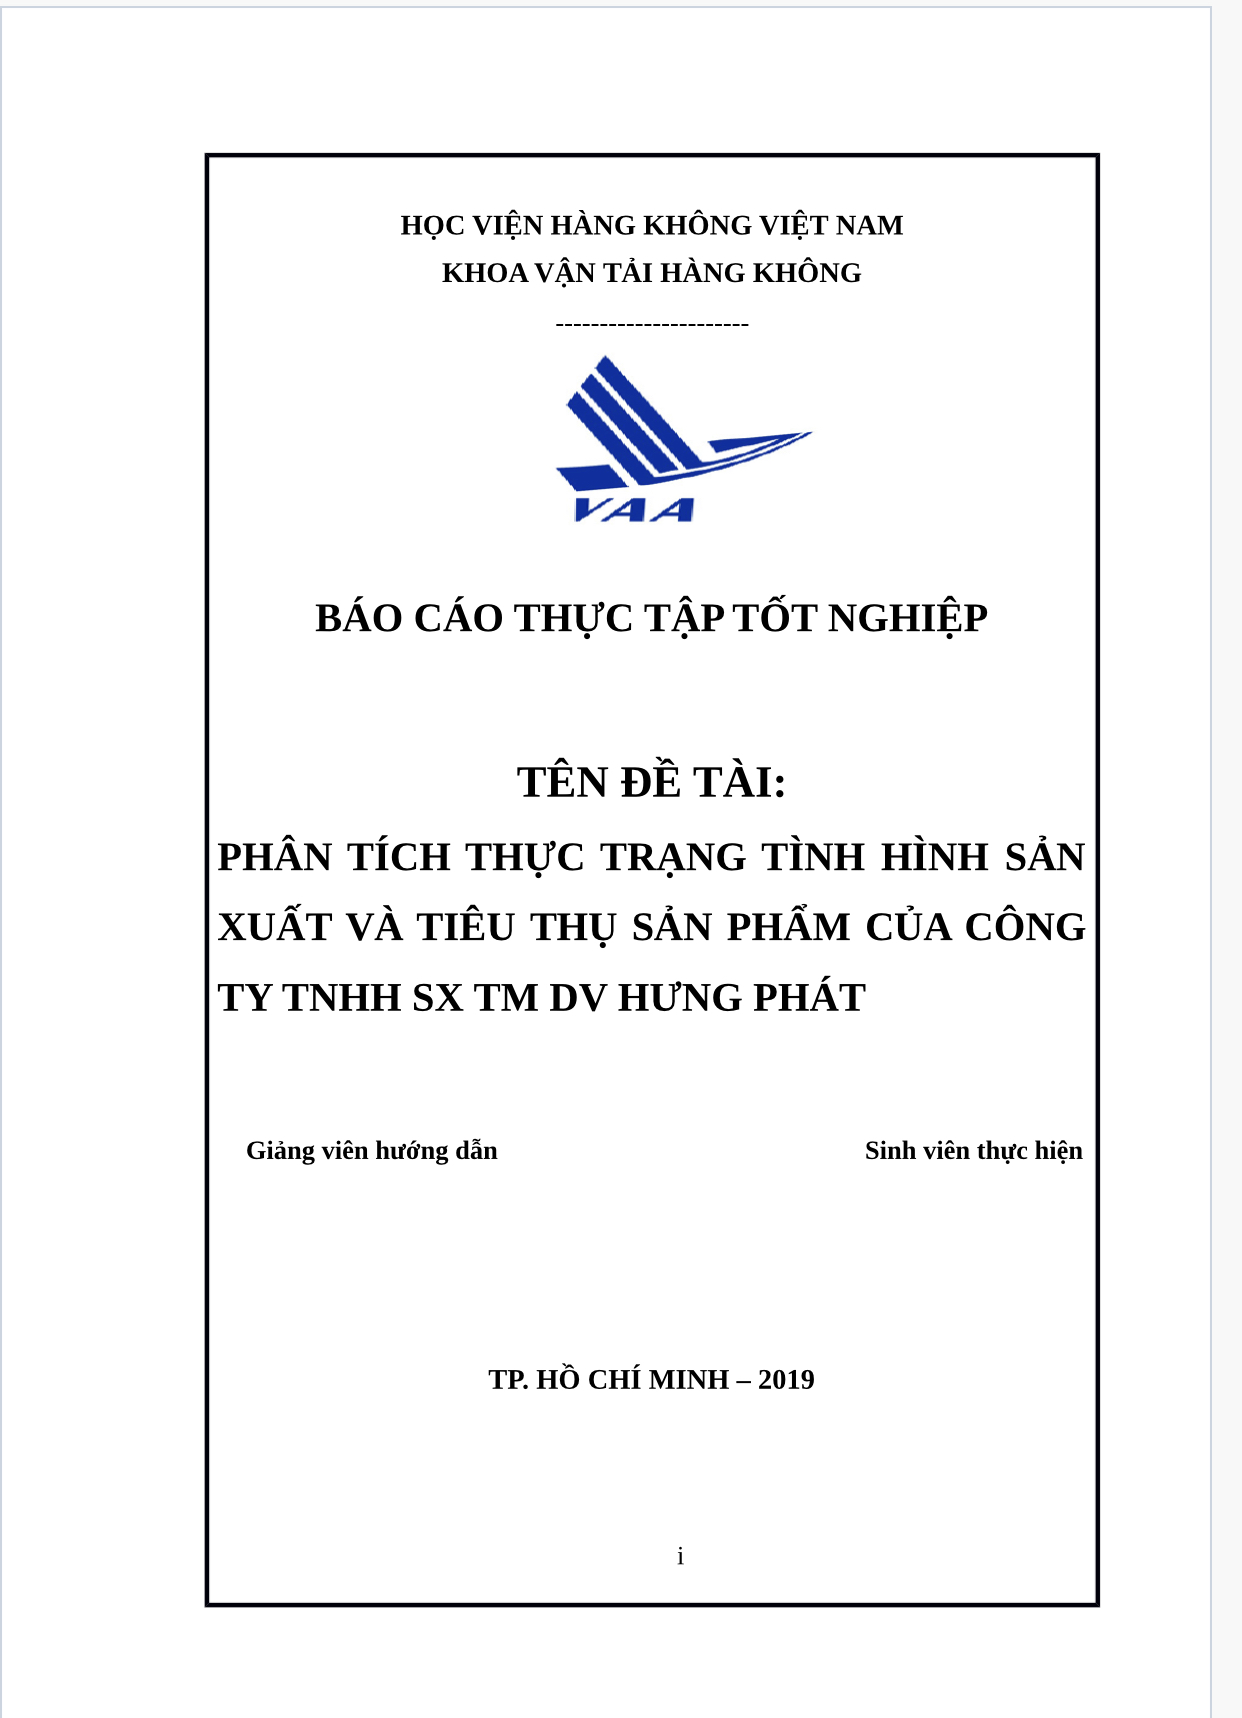 Báo cáo thực tập tốt nghiệp phân tích thực trạng tình hình sản xuất và tiêu thụ sản phẩm của công ty TNHH sản xuất thương mại dịch vụ Hưng Phát